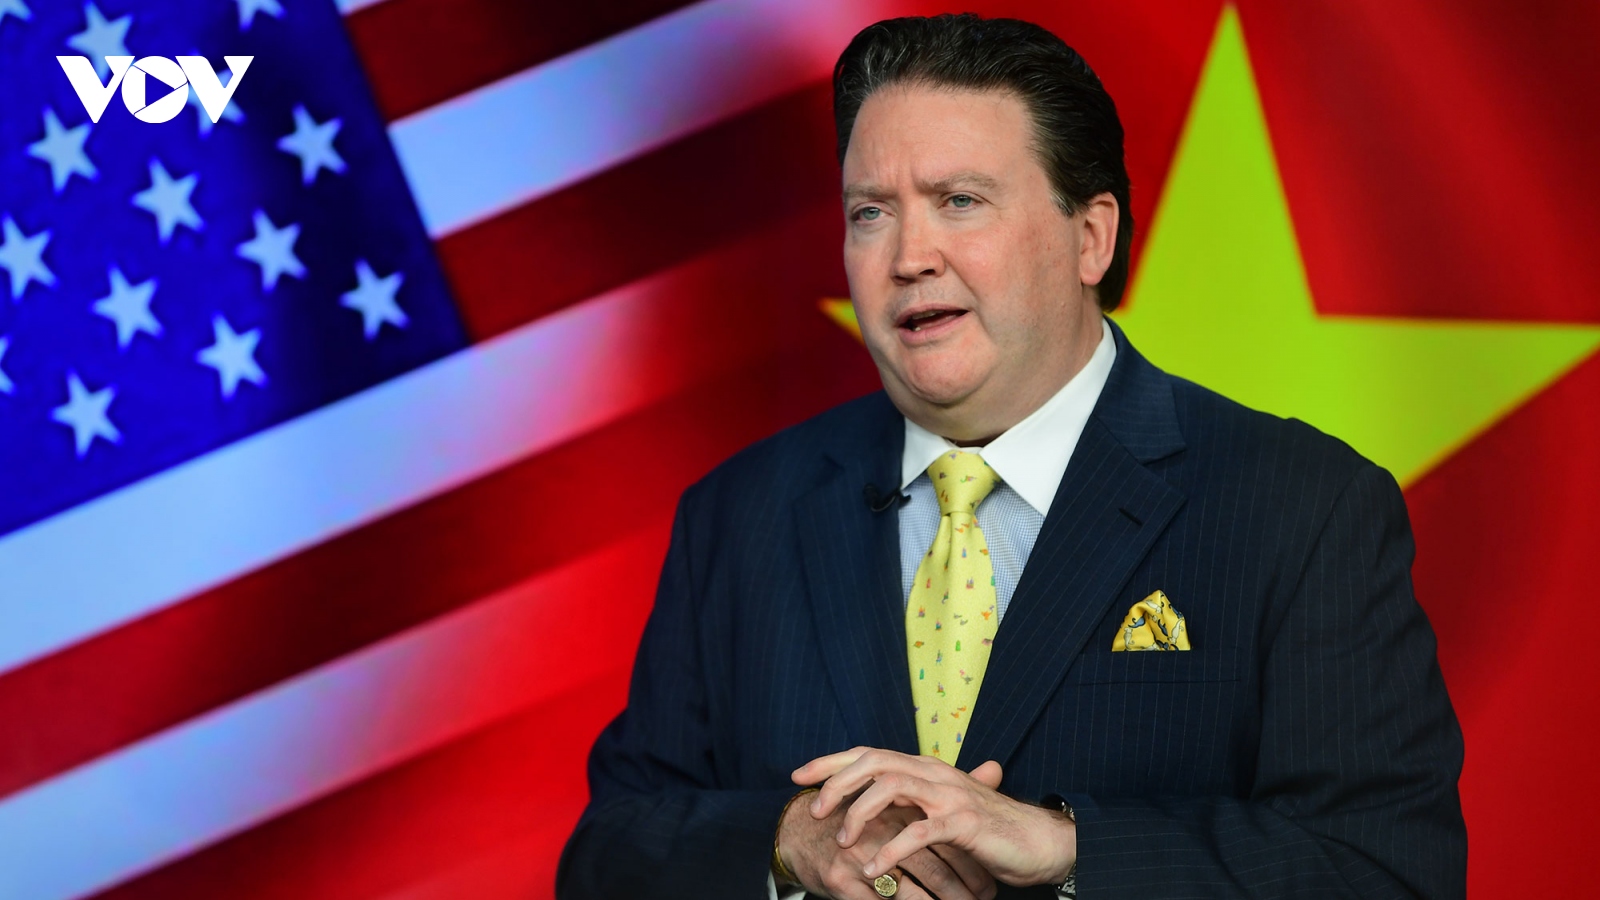 Đại sứ Mỹ: Việt Nam đóng vai trò quan trọng trong chuỗi cung ứng toàn cầu